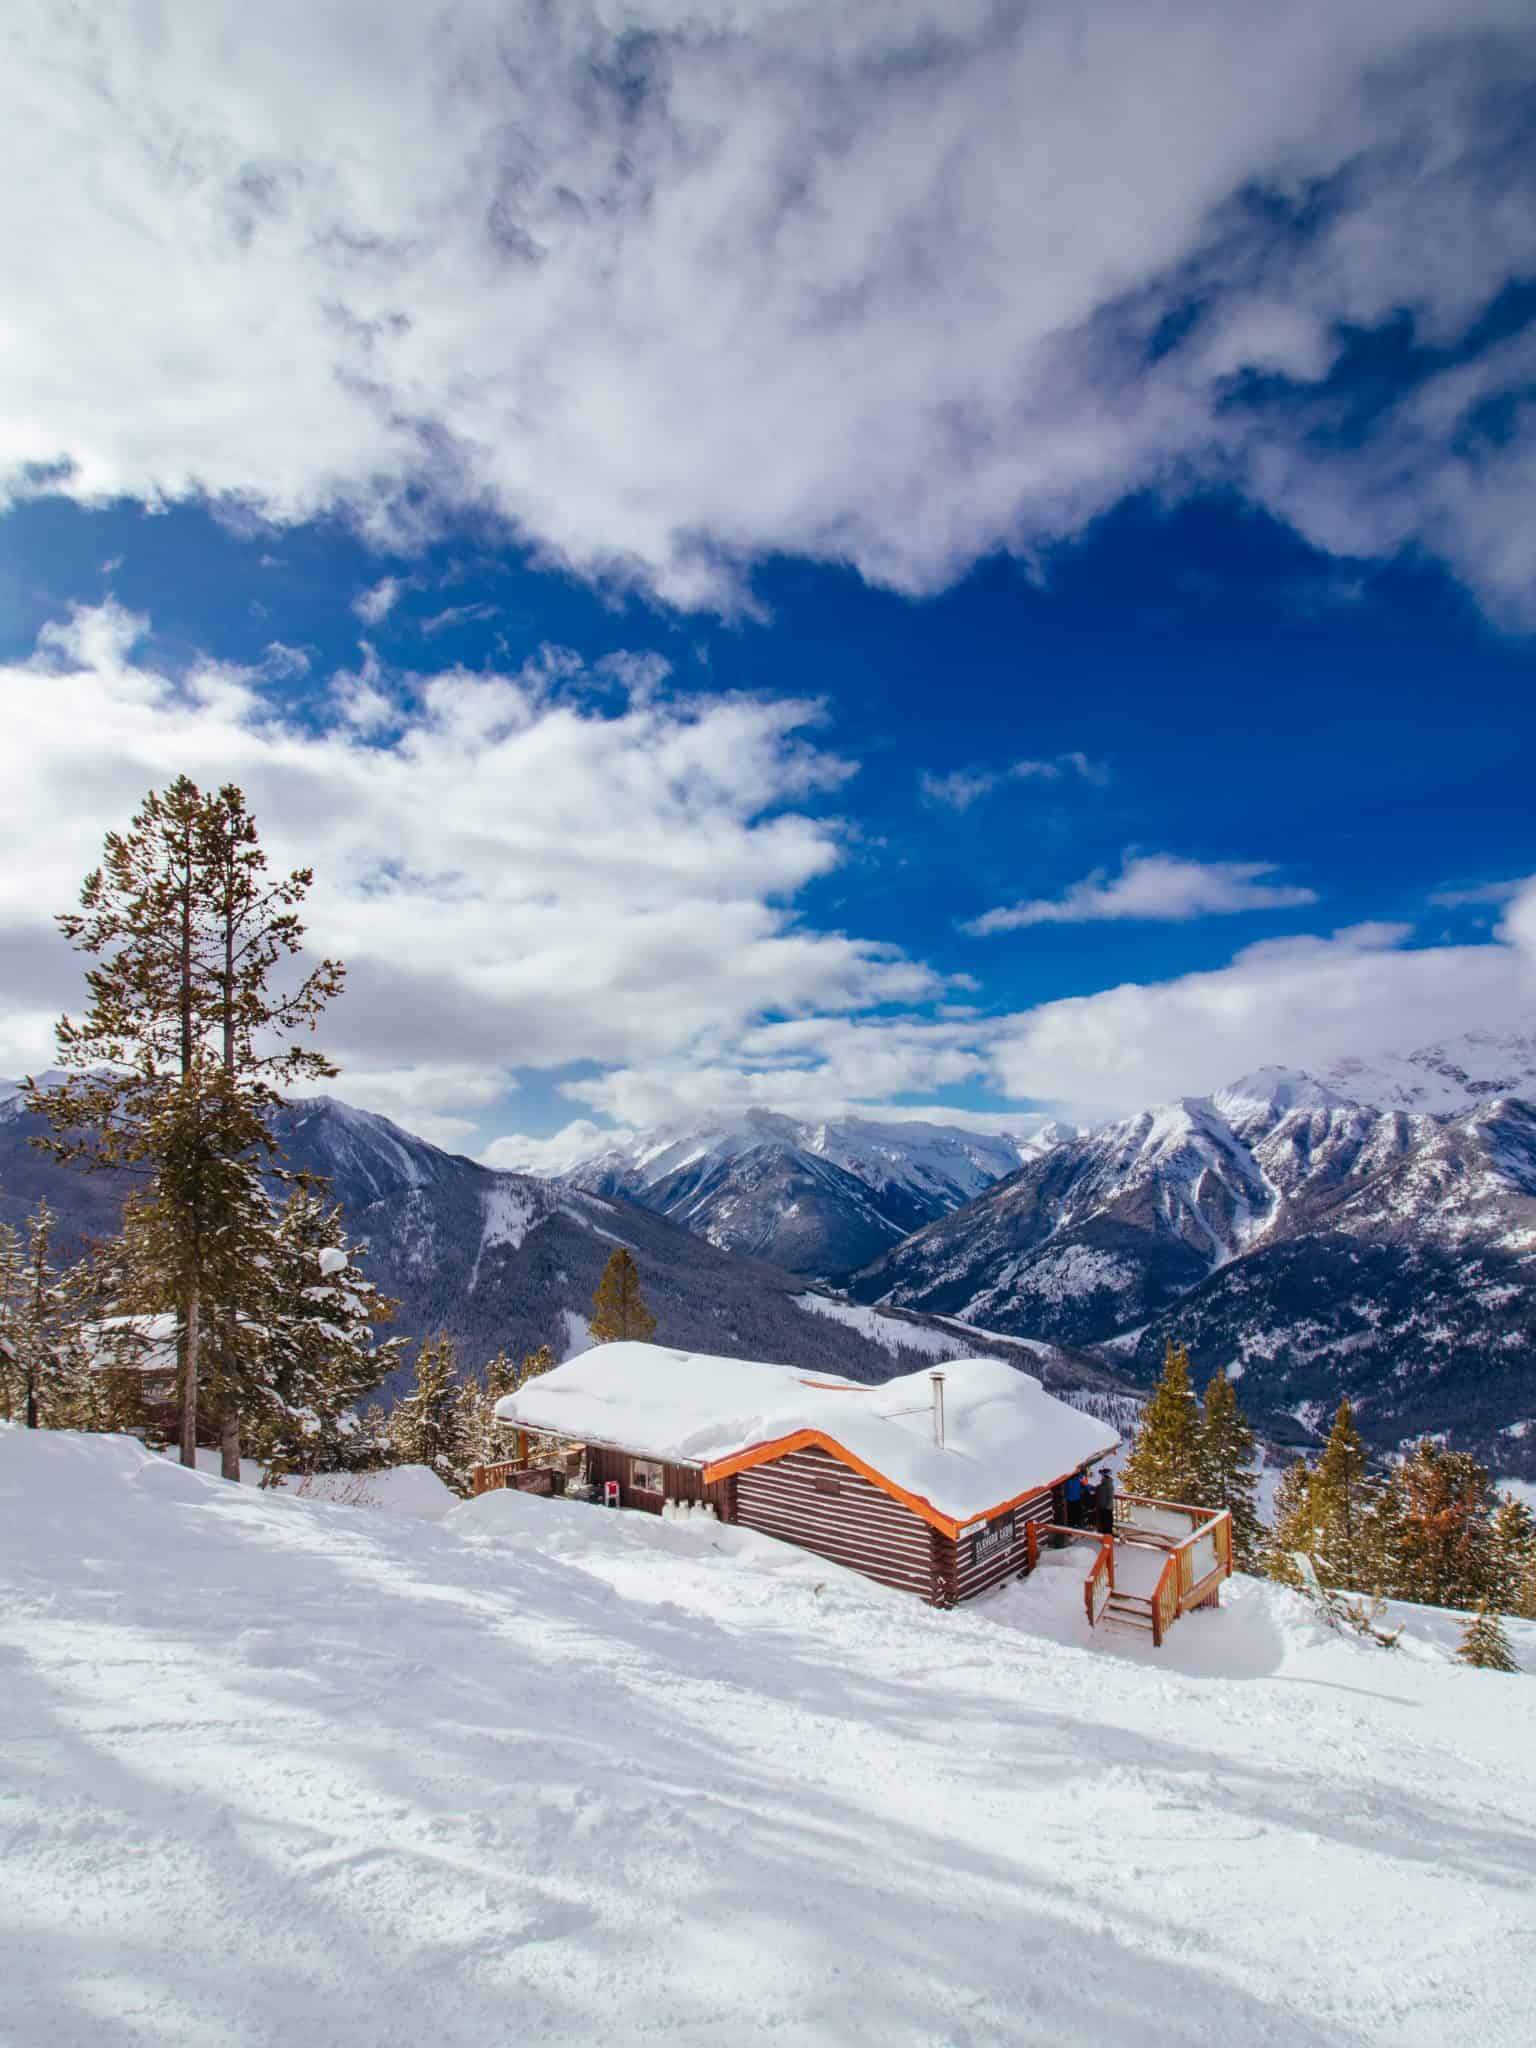 On Mountain Cabin at Panorama Ski Resort